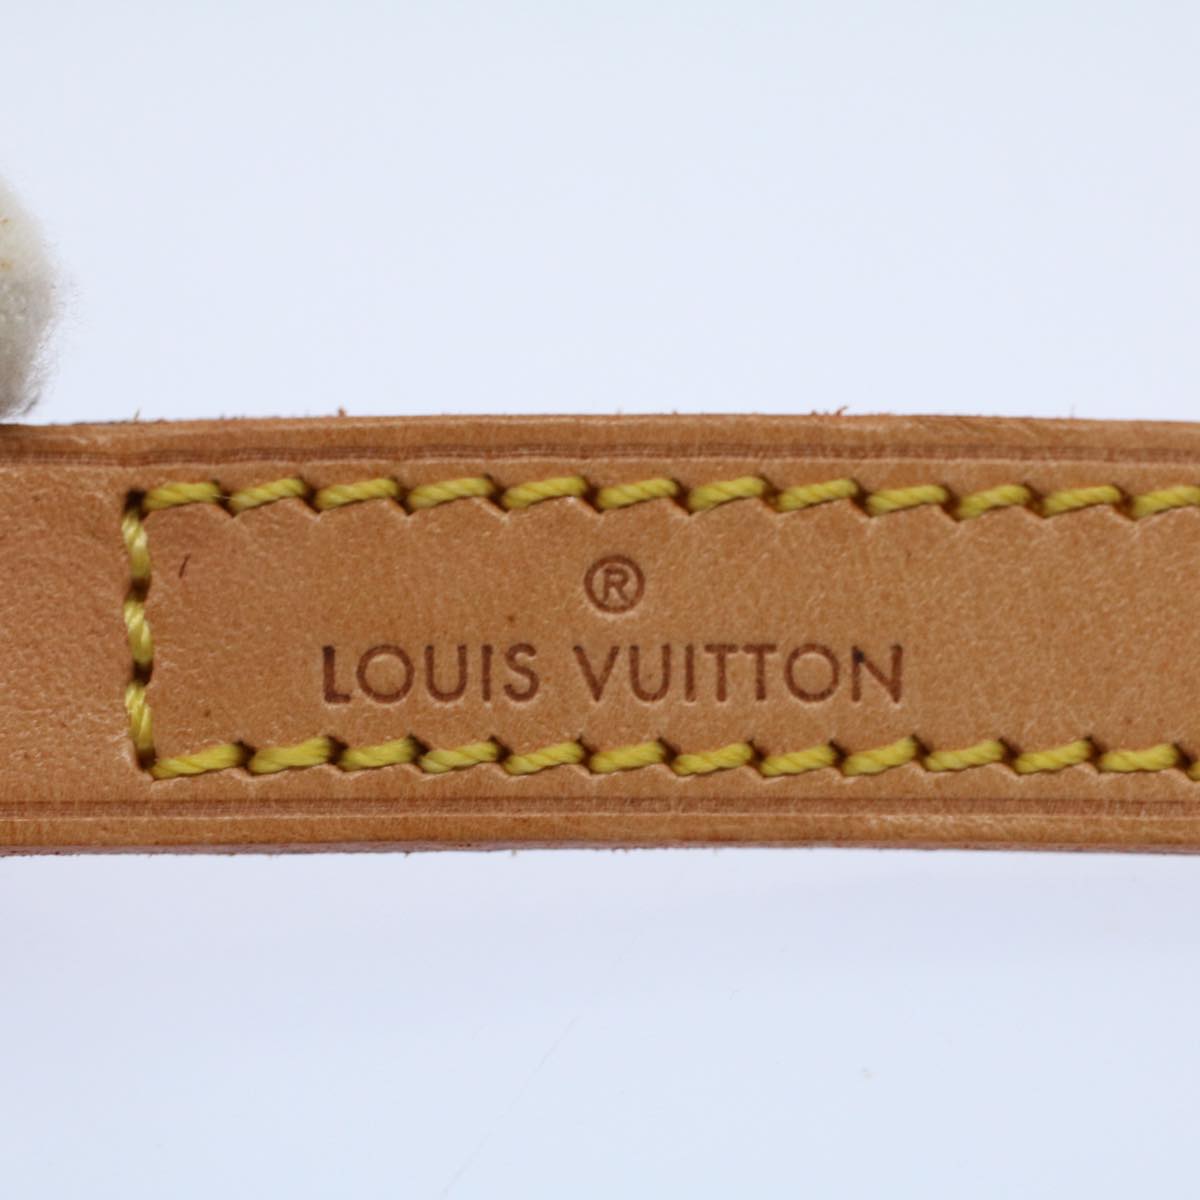 LOUIS VUITTON Shoulder Strap Leather 44.9"" Beige LV Auth ar10674